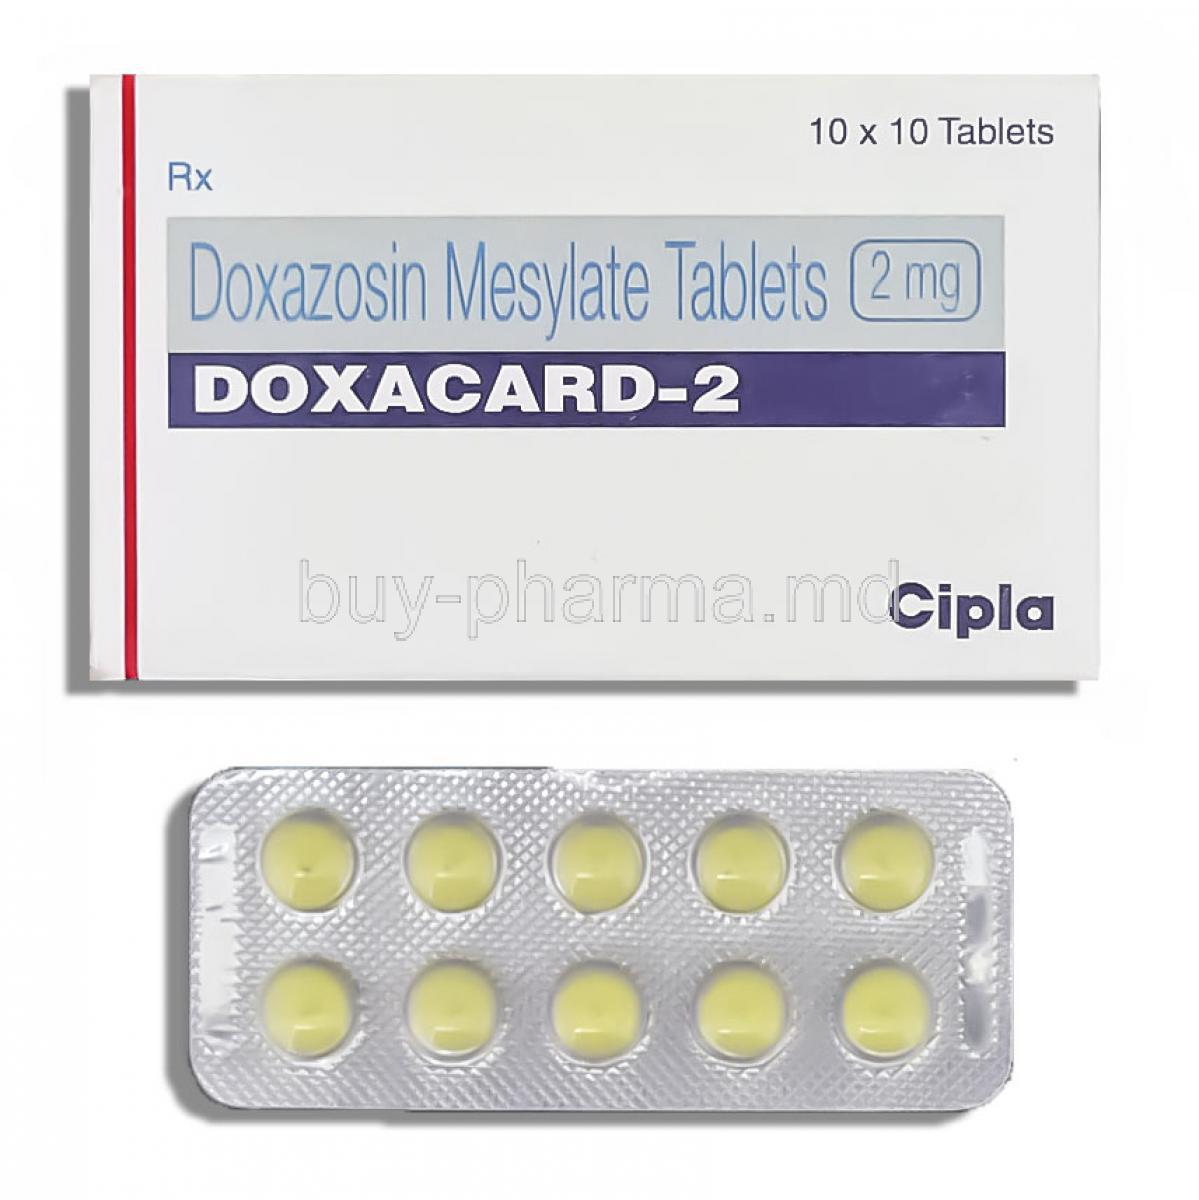 Doxacard, Doxazosin 2 mg